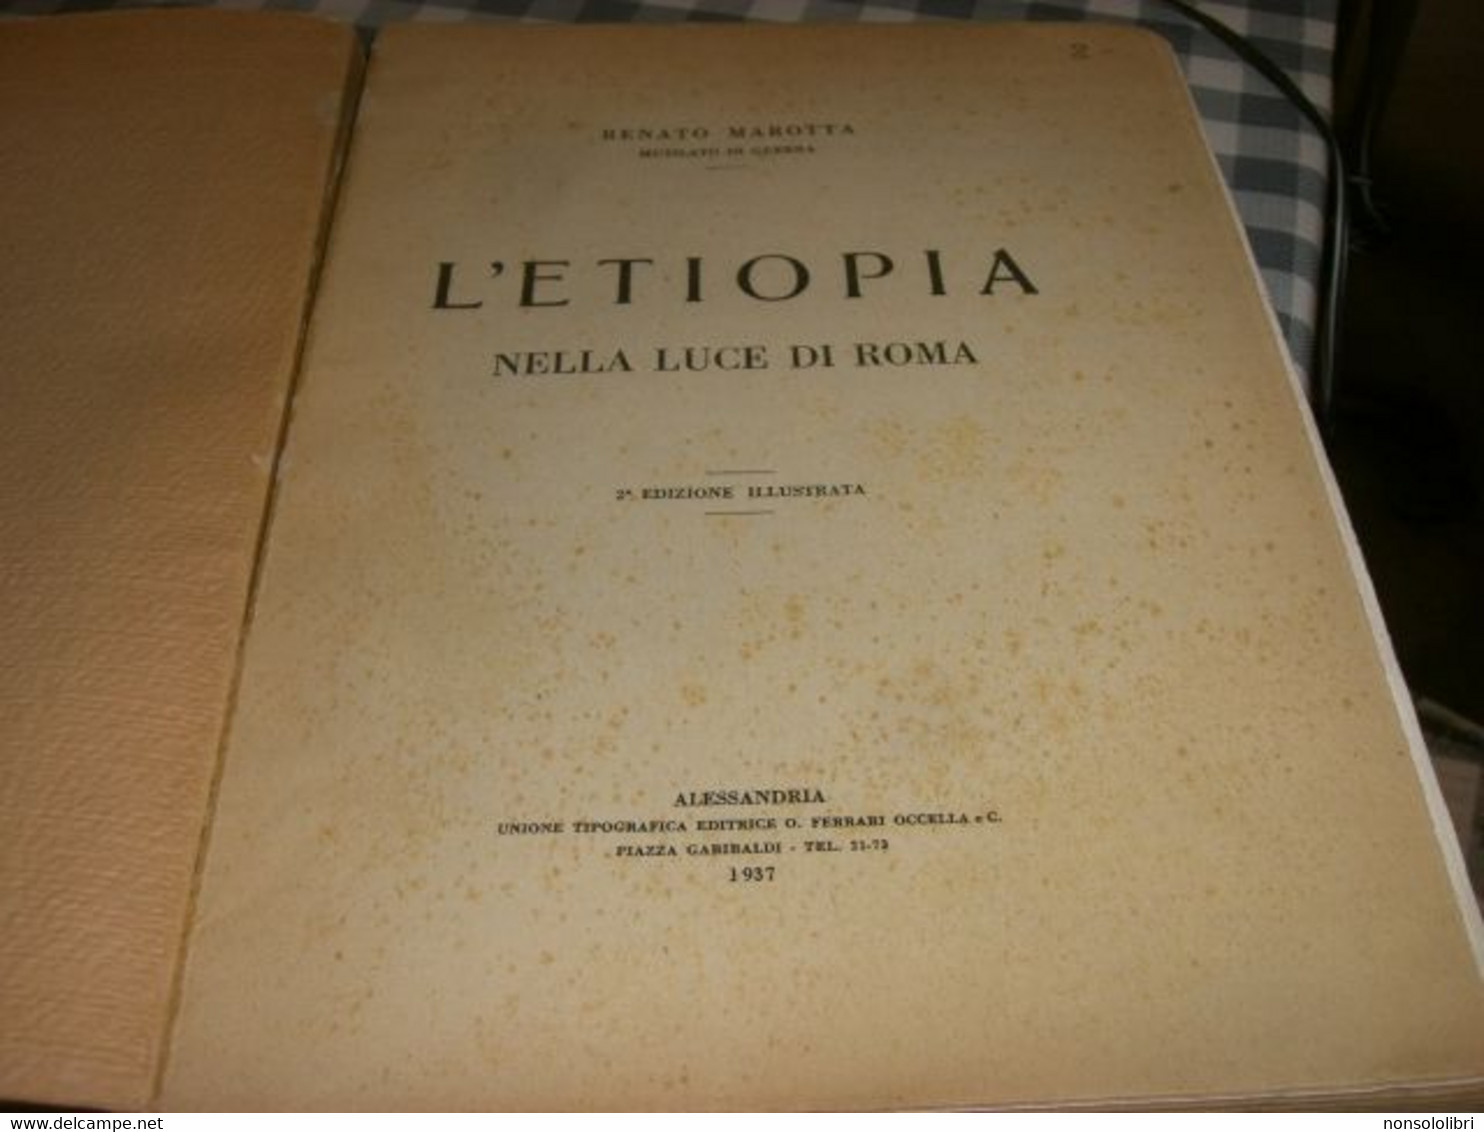 LIBRO L'ETIOPIA NELLA LUCE DI ROMA -RENATO MAROTTA -2° EDIZIONE ILLUSTRATA  1937 - Société, Politique, économie